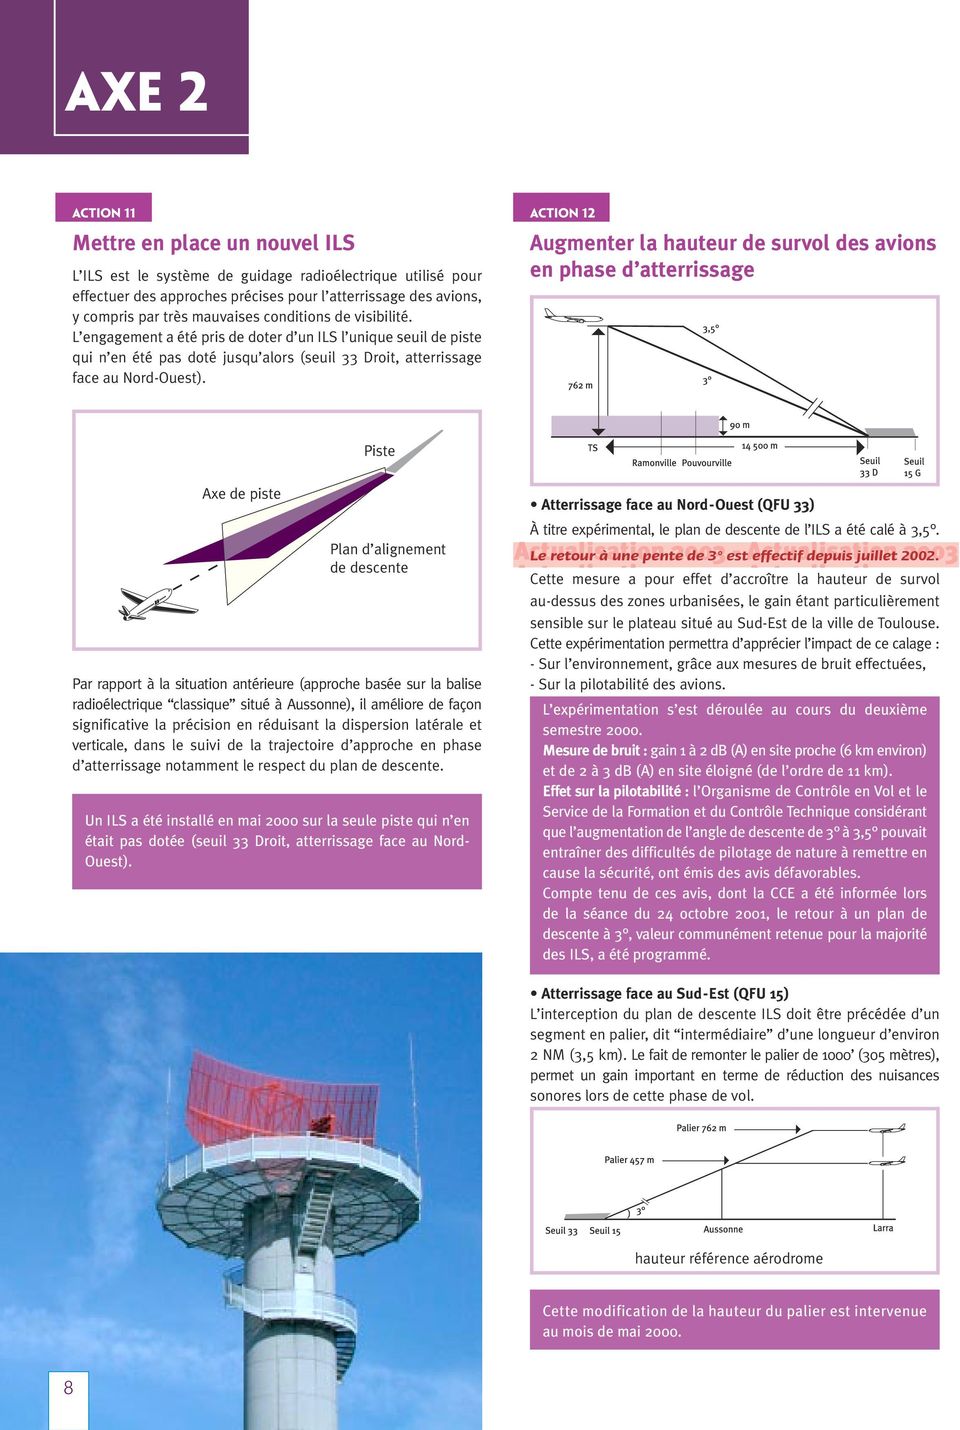 ACTION 12 Augmenter la hauteur de survol des avions en phase d atterrissage Piste Axe de piste Plan d alignement de descente Par rapport à la situation antérieure (approche basée sur la balise